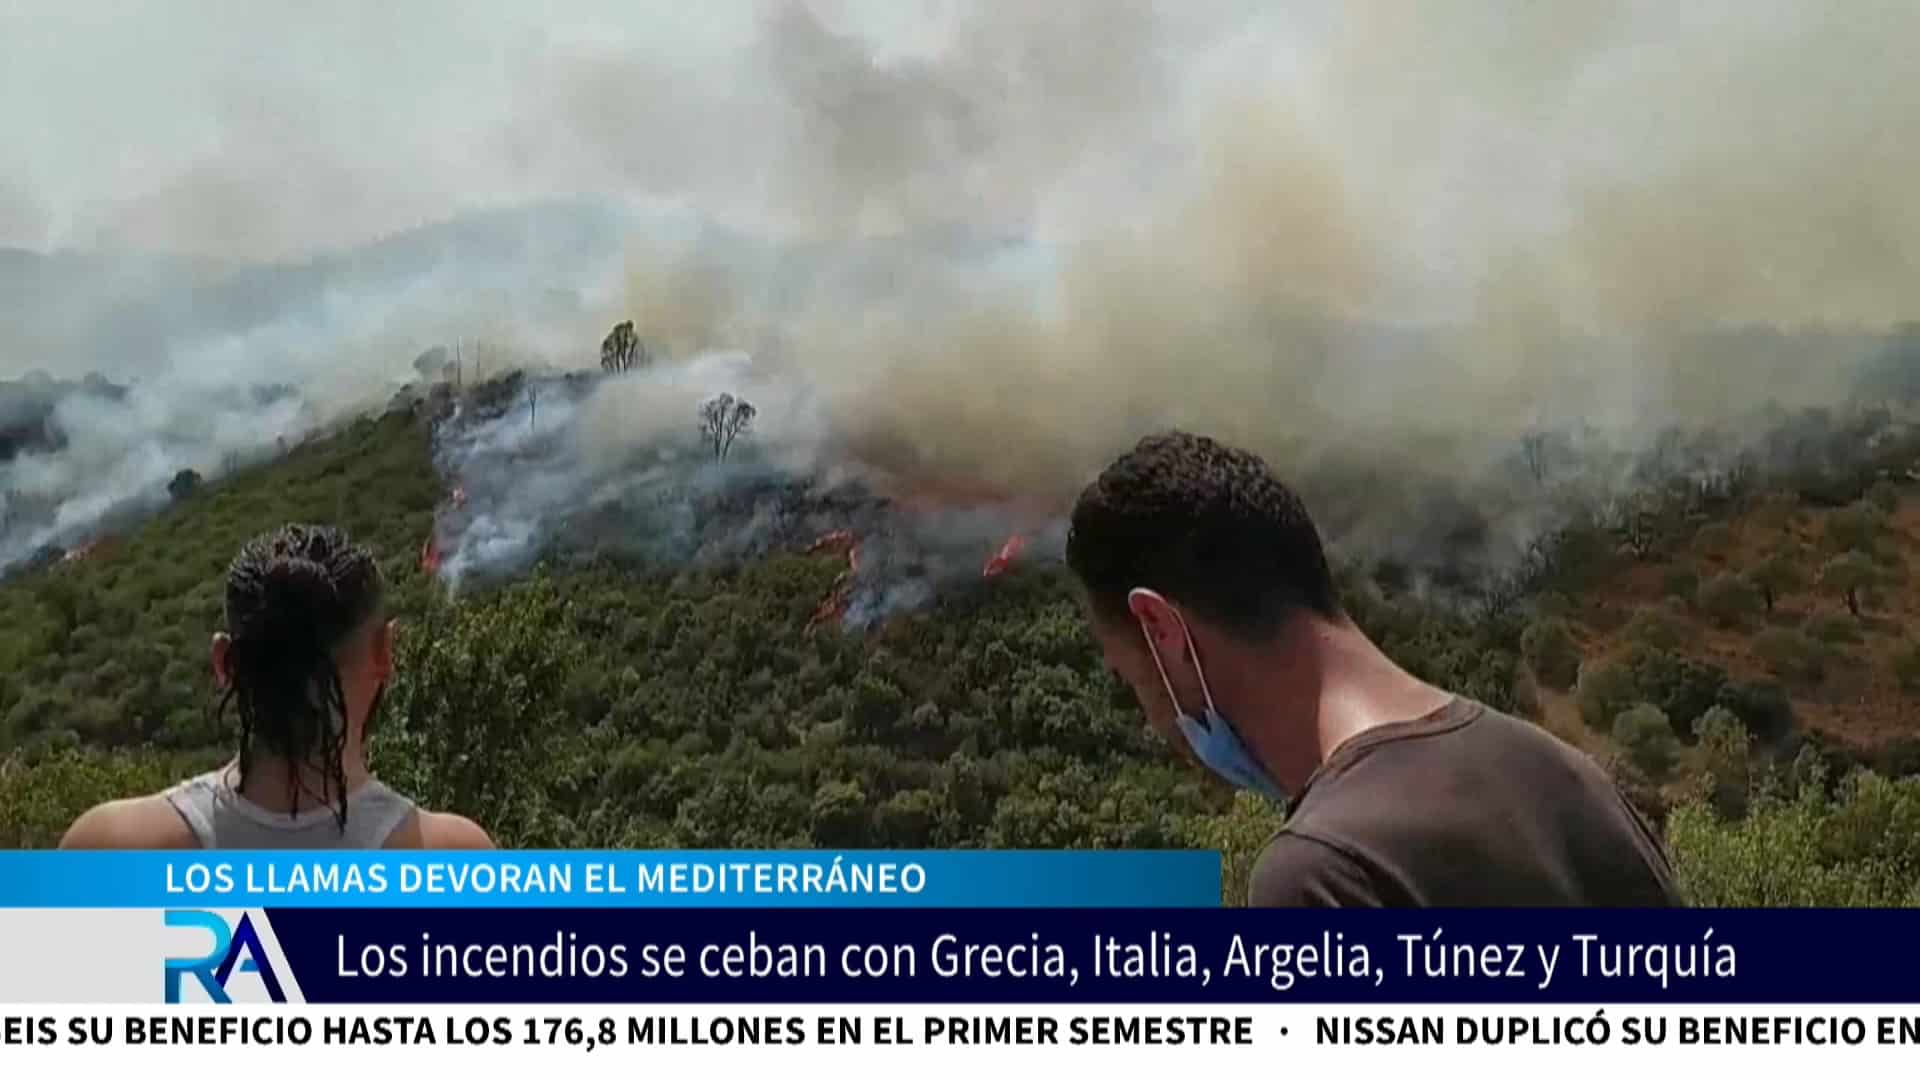 Los incendios devoran el Mediterráneo: causan estragos en Italia, Grecia, Argelia, Túnez y Turquía.